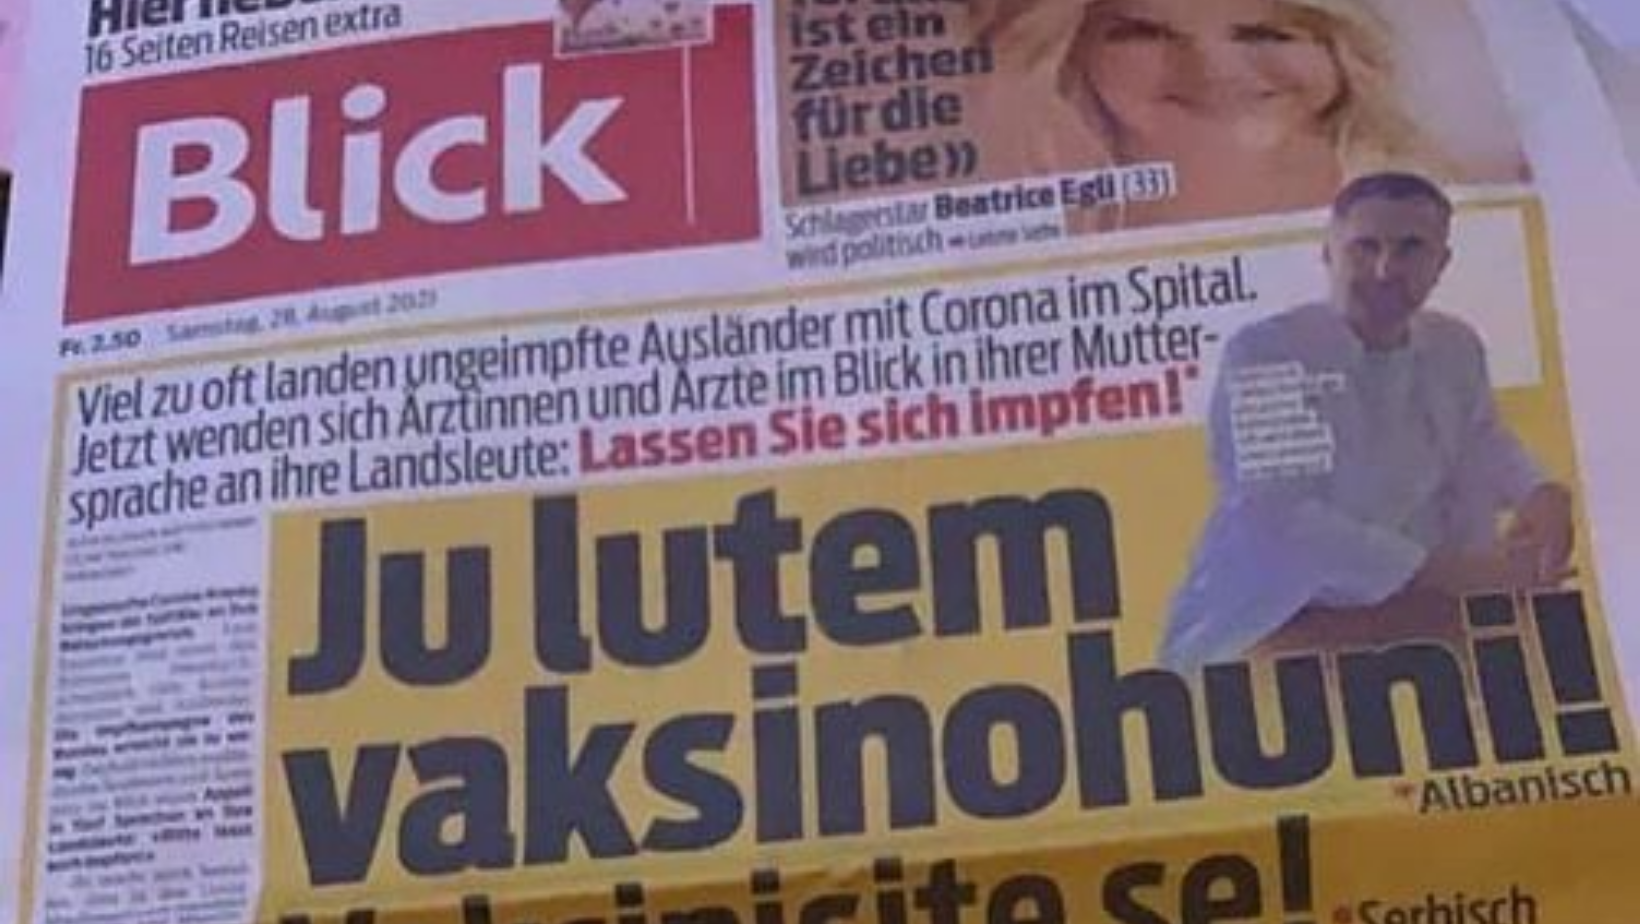  Gazeta zvicerane iu drejtohet shqiptarëve në shqip: Ju lutem vaksinohuni